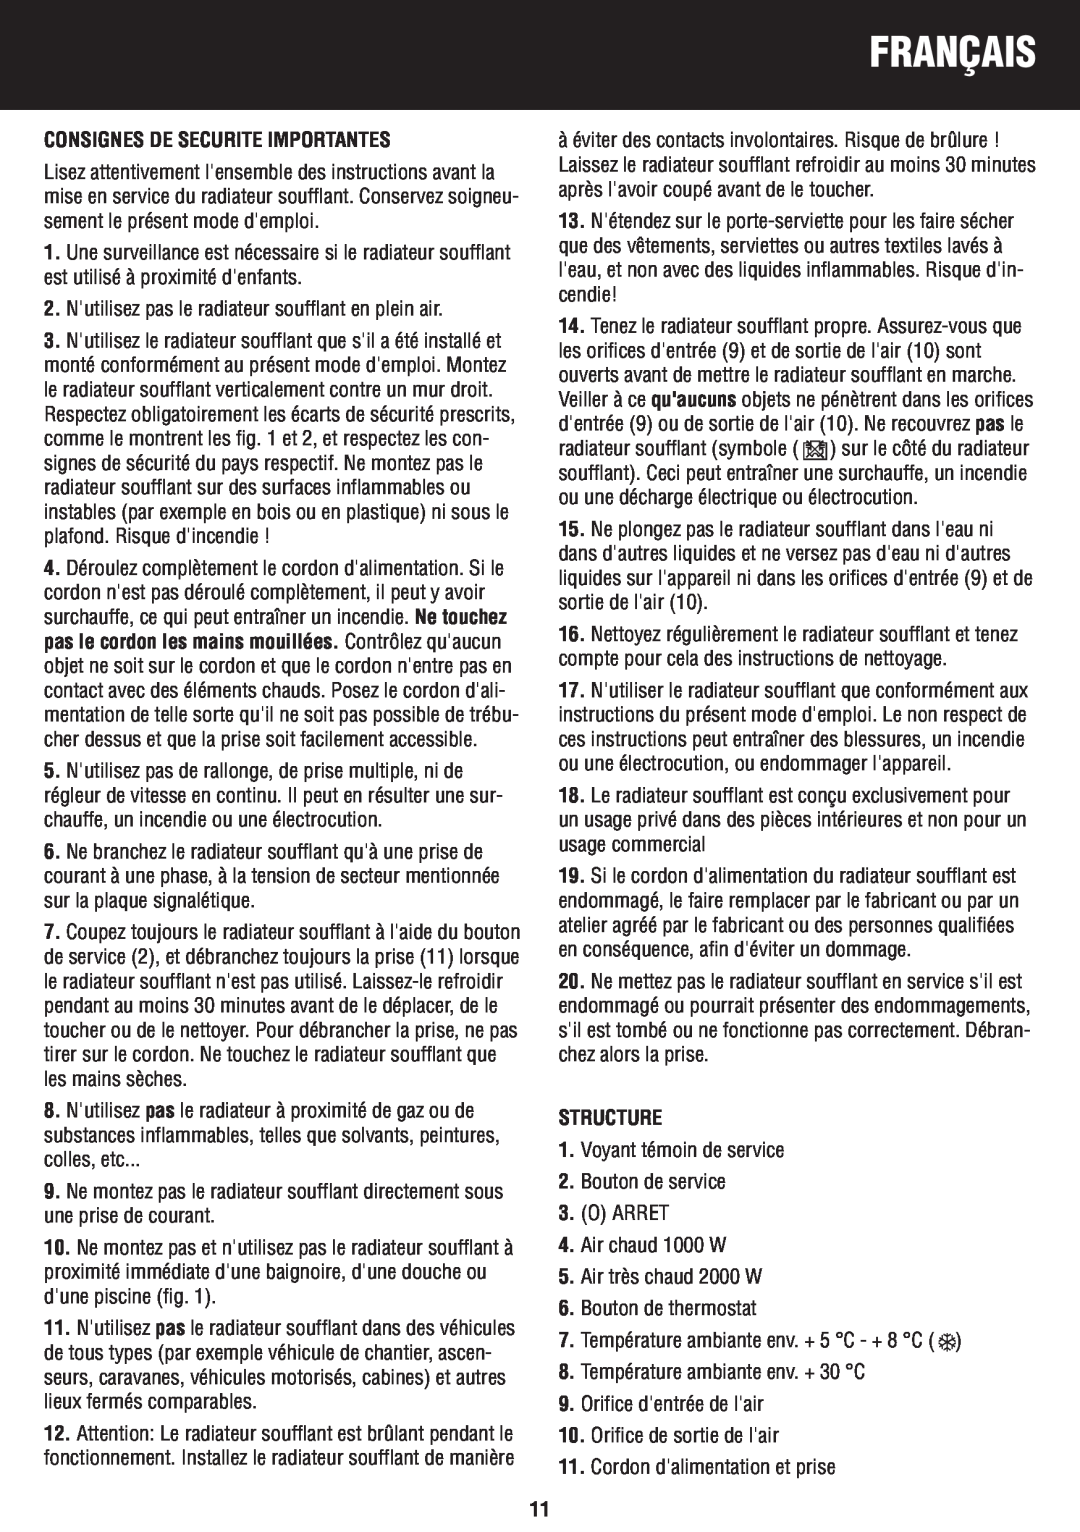 Honeywell BH-777FTE manual do utilizador Français, Consignes De Securite Importantes, Structure 